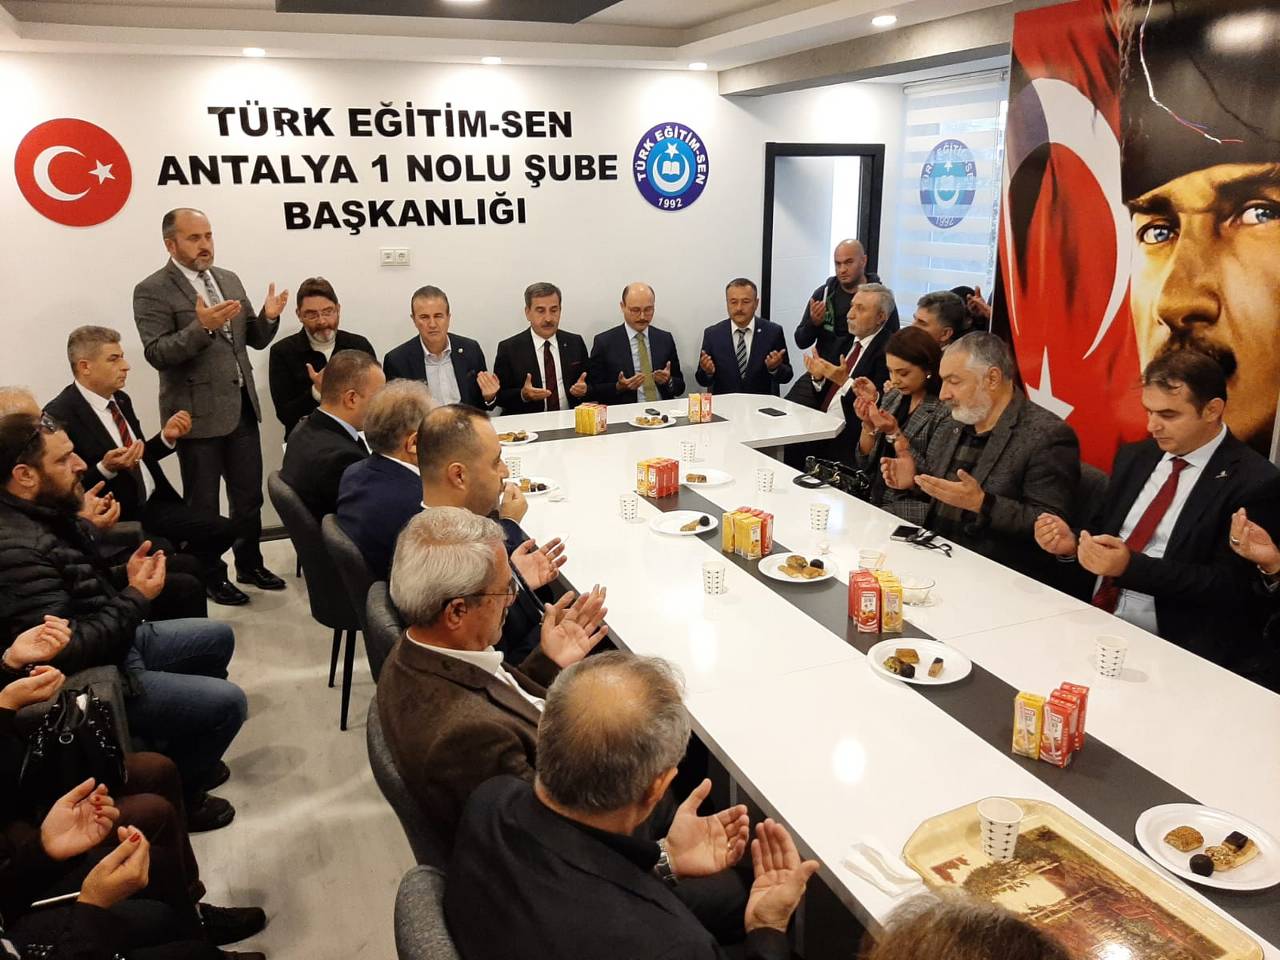 Genel Başkan, Antalya 1 No’lu Şube’nin Yeni Hizmet Binasının Açılışına Katıldı.